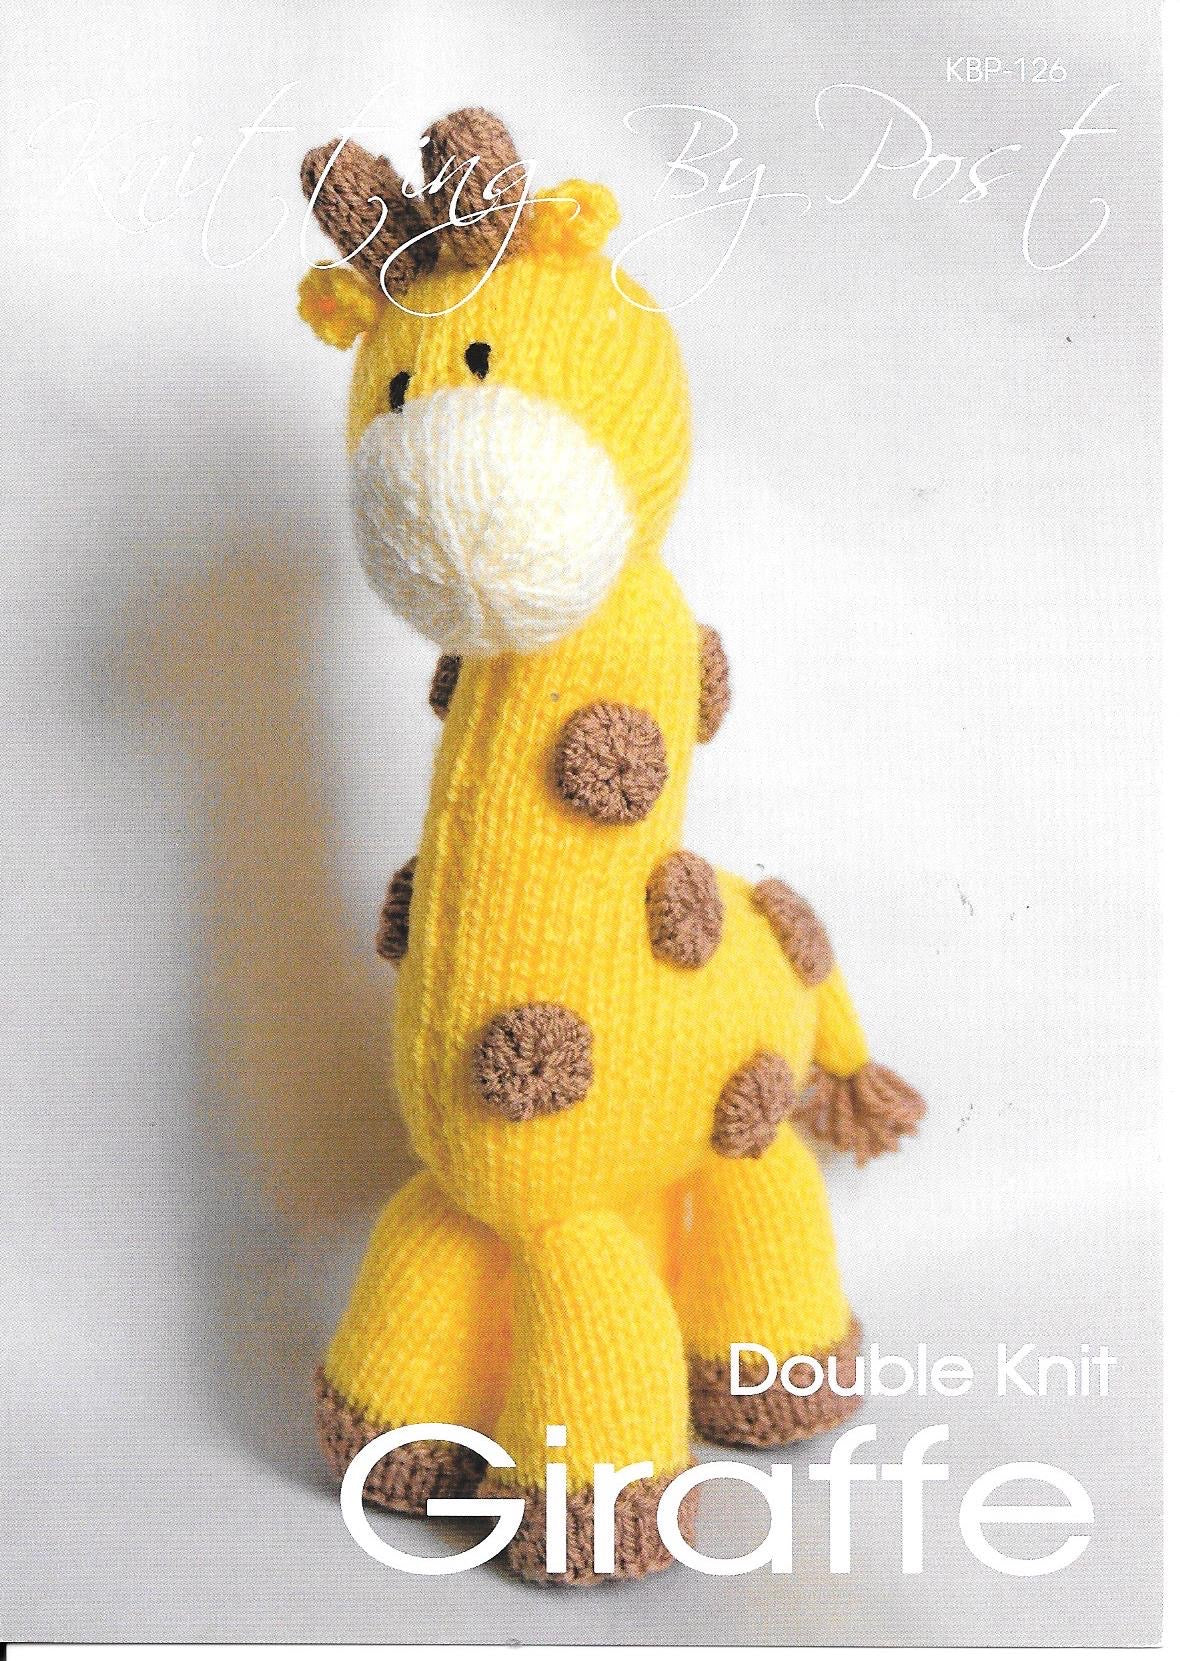 126 KBP126 Giraffe toy in dk knitting pattern